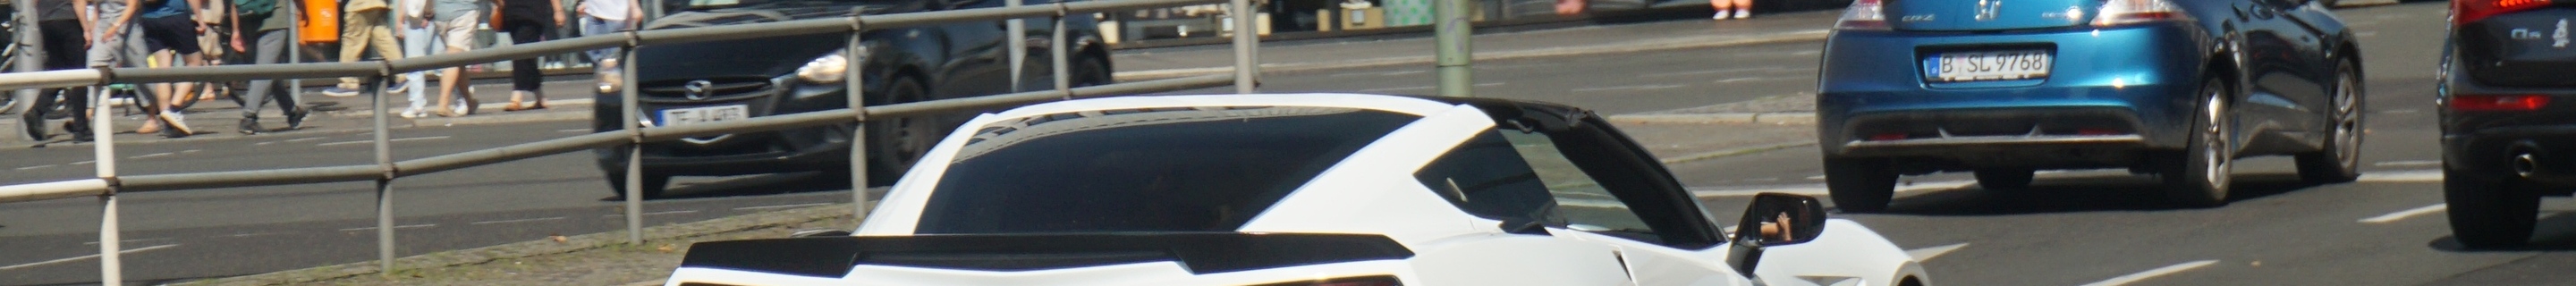 Chevrolet Corvette C7 Stingray